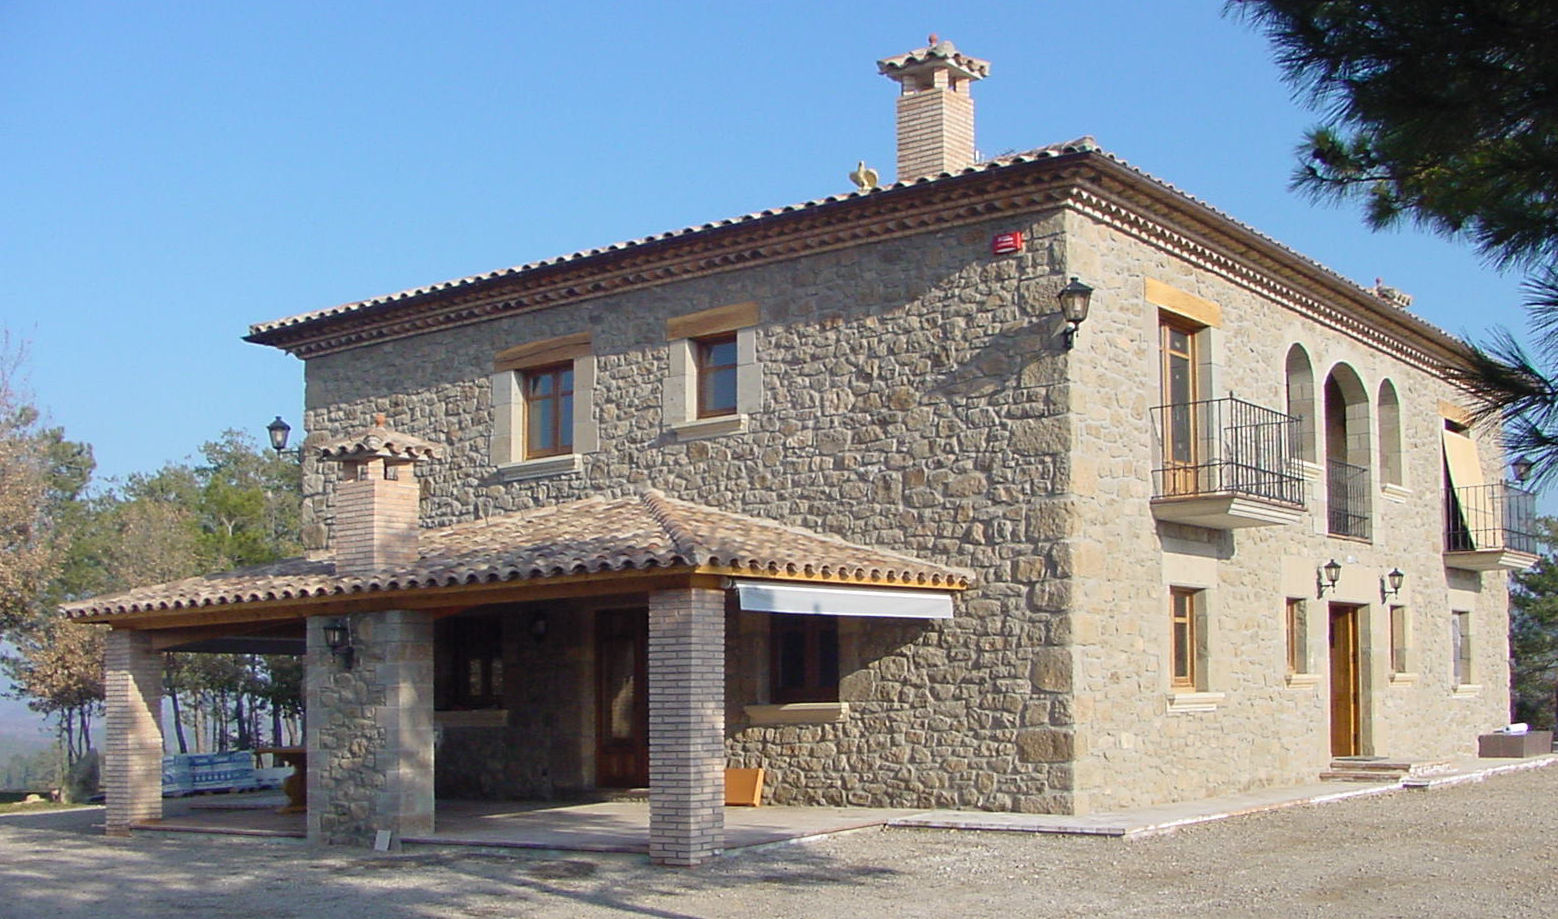 Casa de turismo rural en la Torre d'Oristà (Barcelona), ALENTORN i ALENTORN ARQUITECTES, SLP ALENTORN i ALENTORN ARQUITECTES, SLP Casas rústicas Piedra